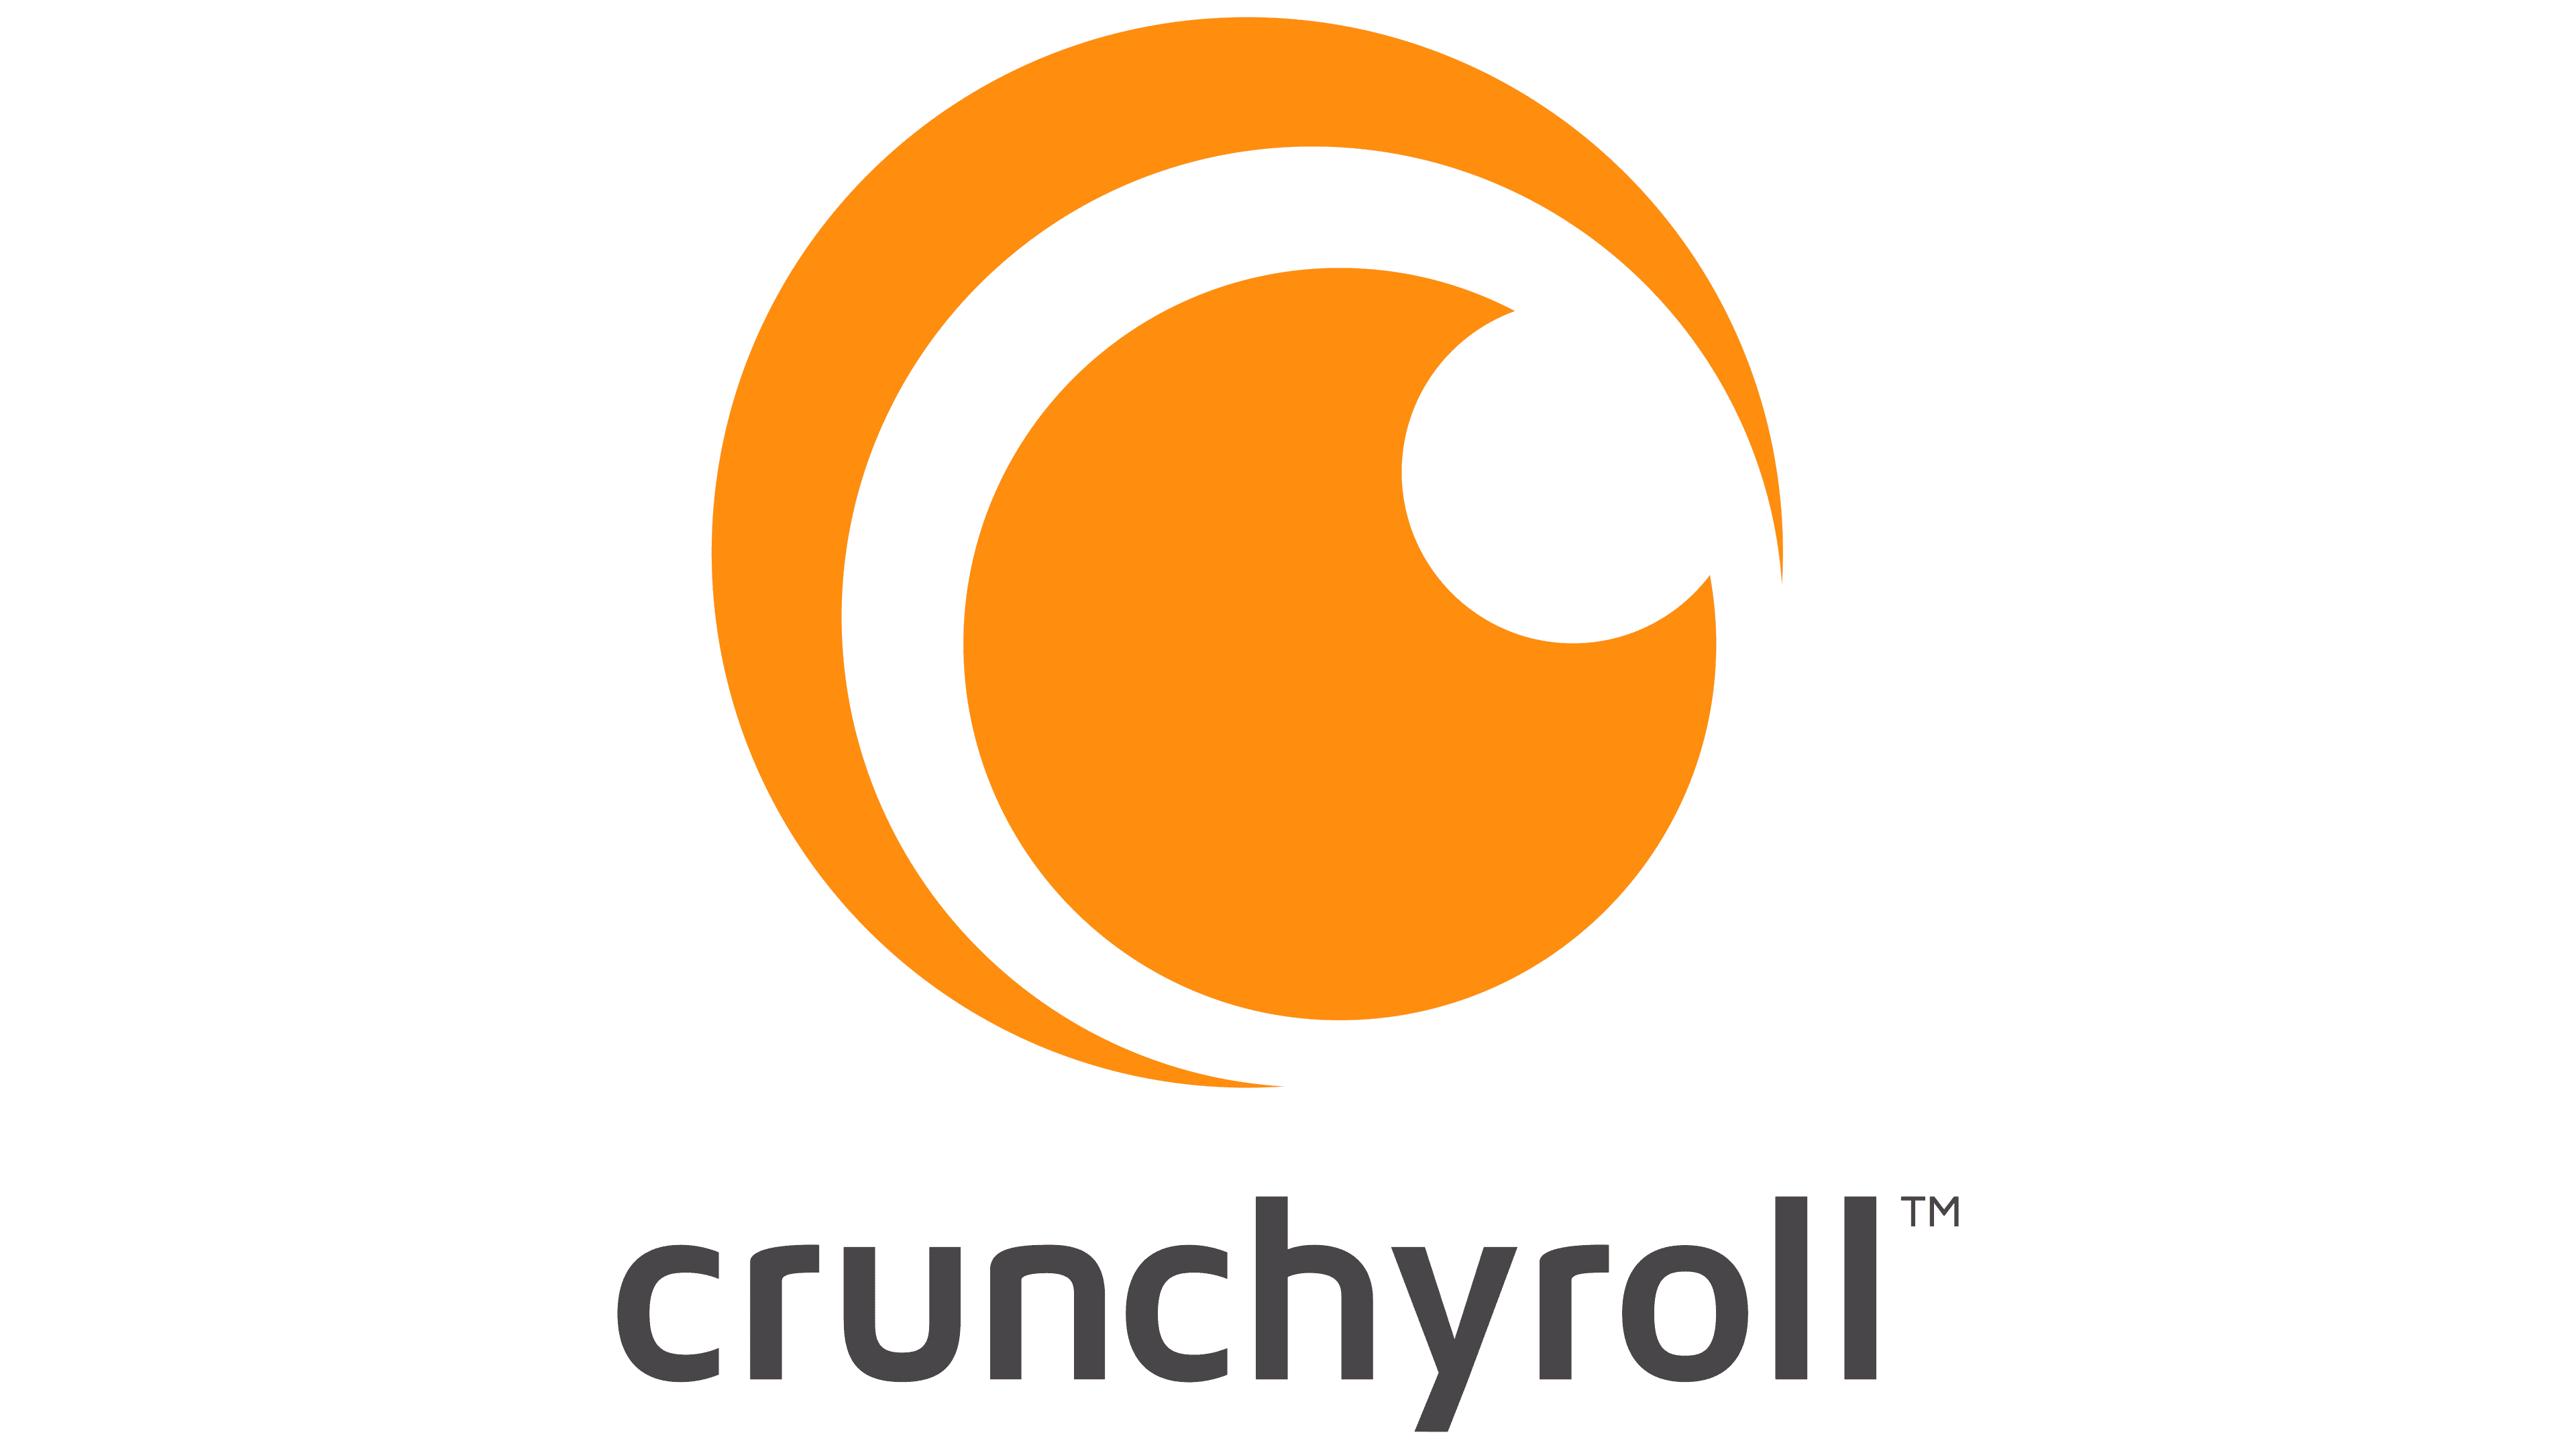 Crunchyroll Logo y símbolo, significado, historia, PNG, marca